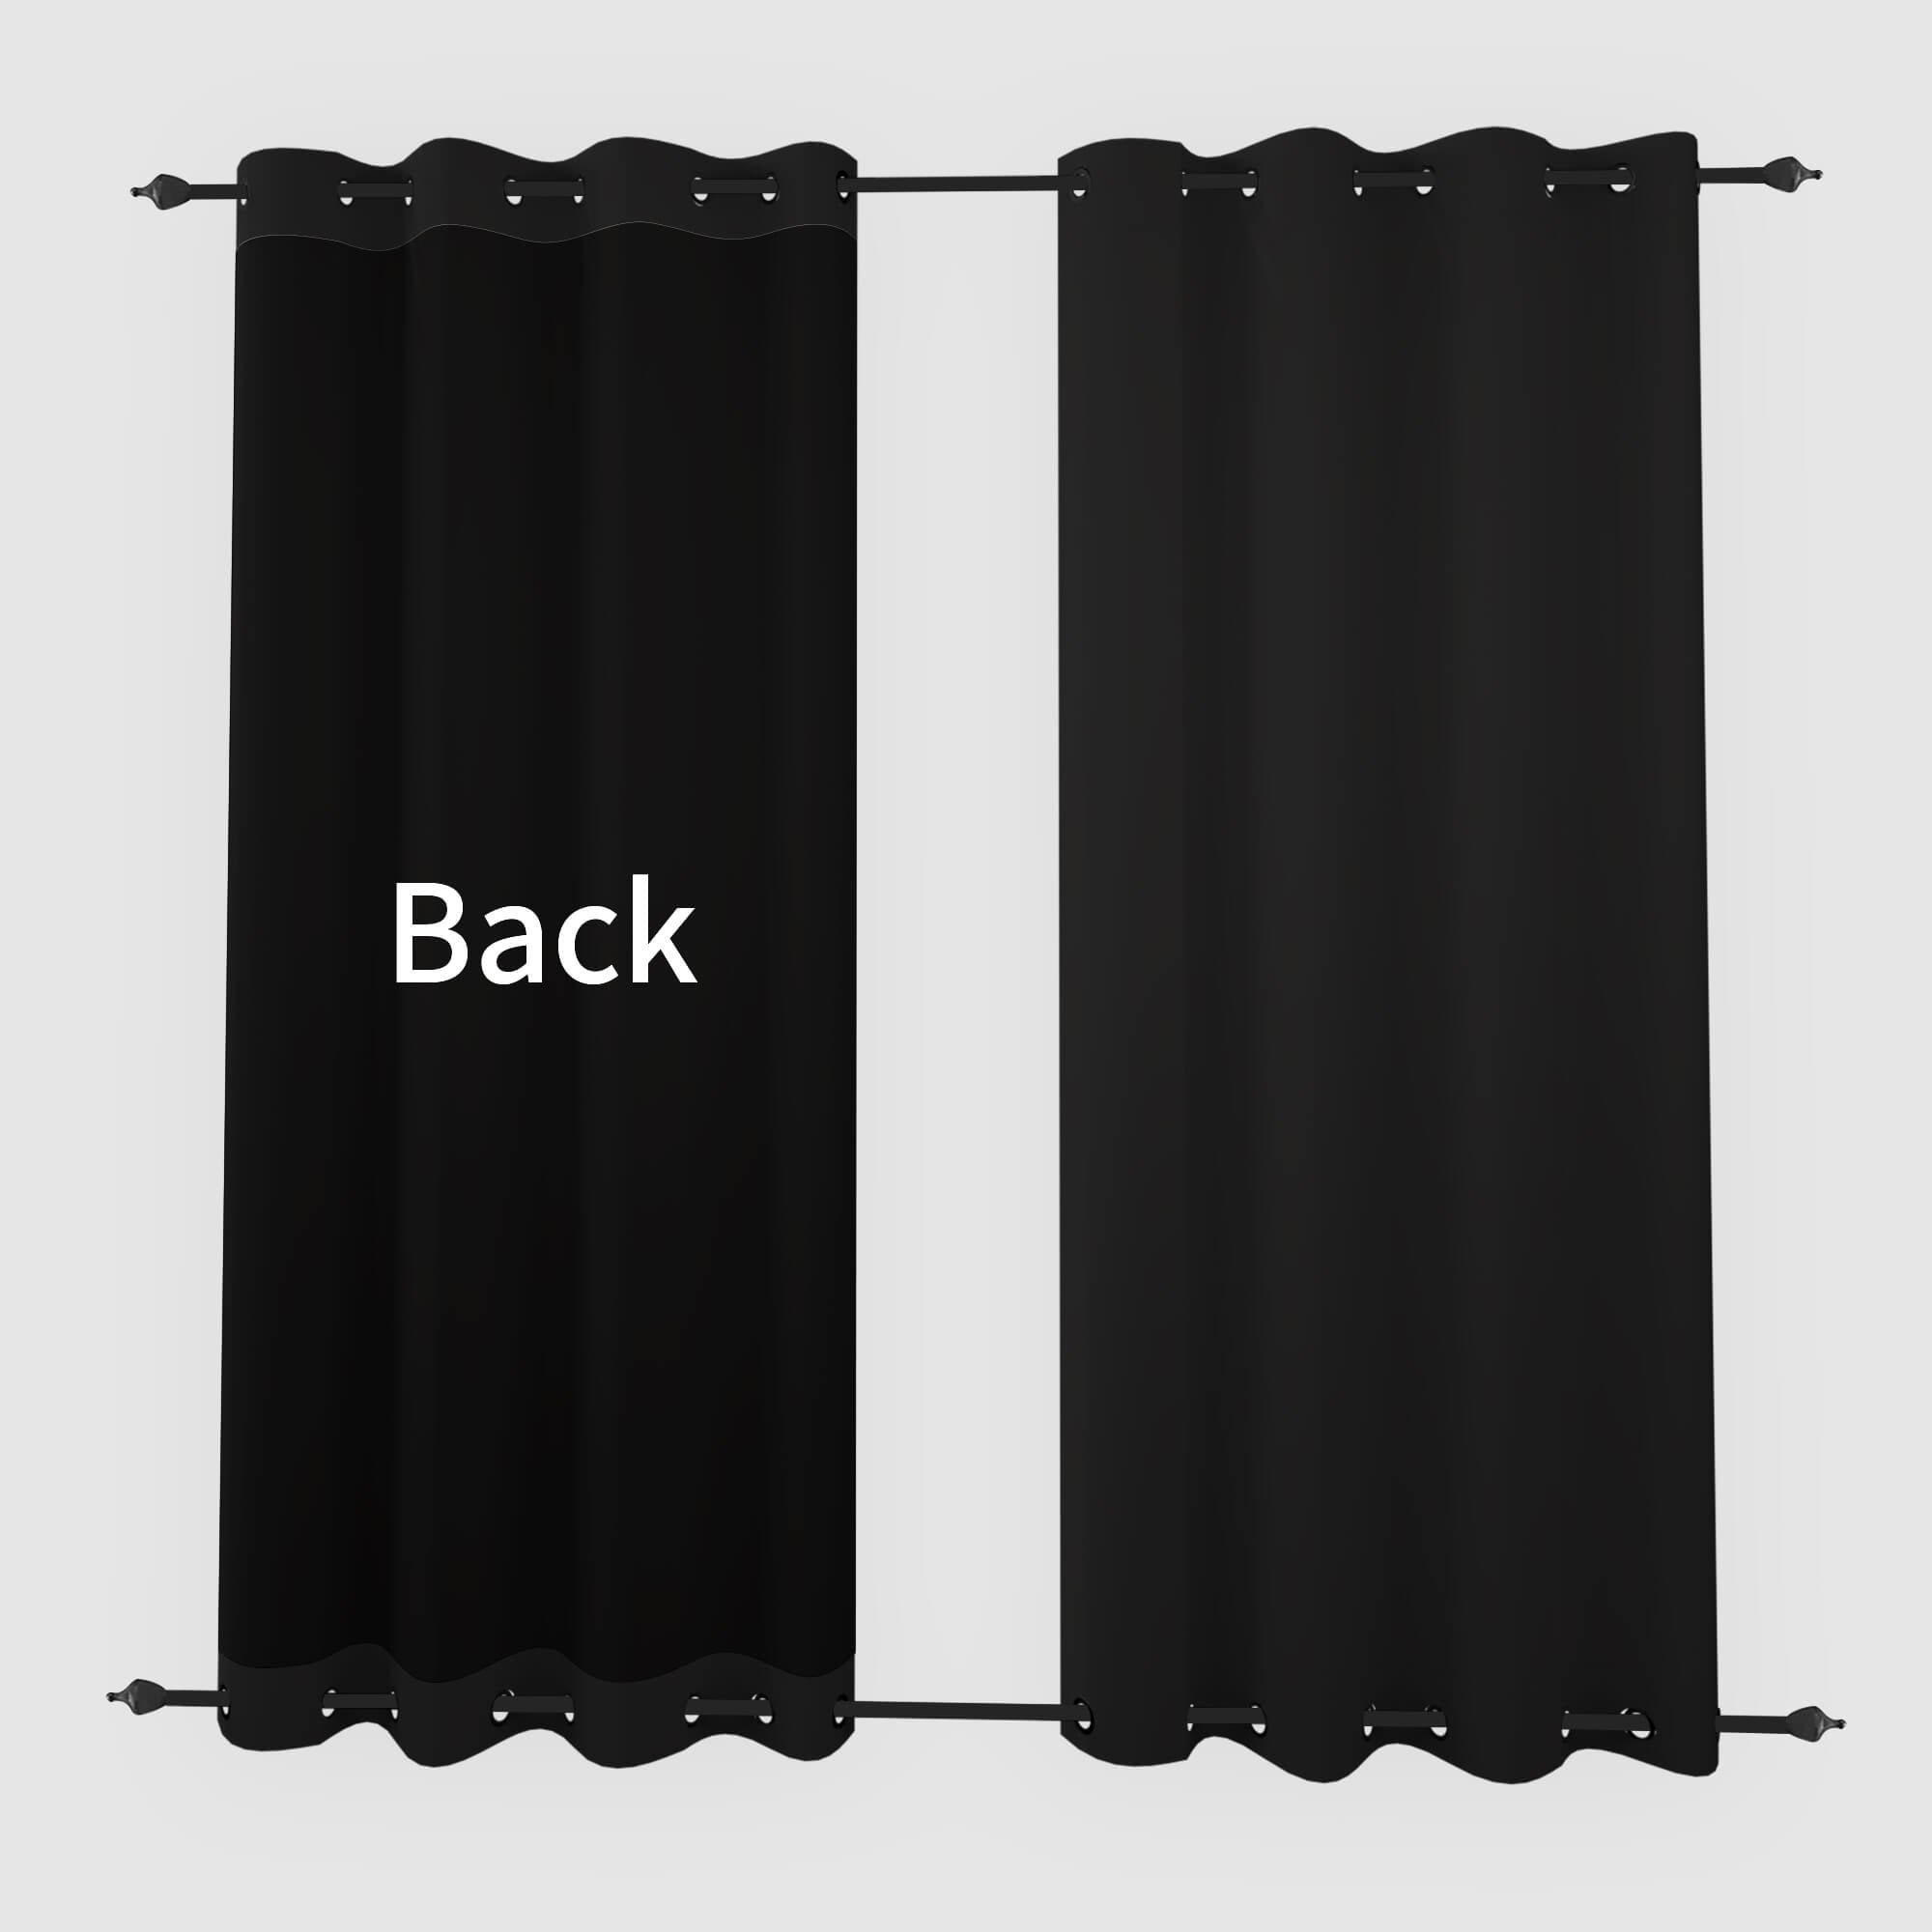 SNOWCITY Blackout Curtains Black - Grommet Top & Bottom